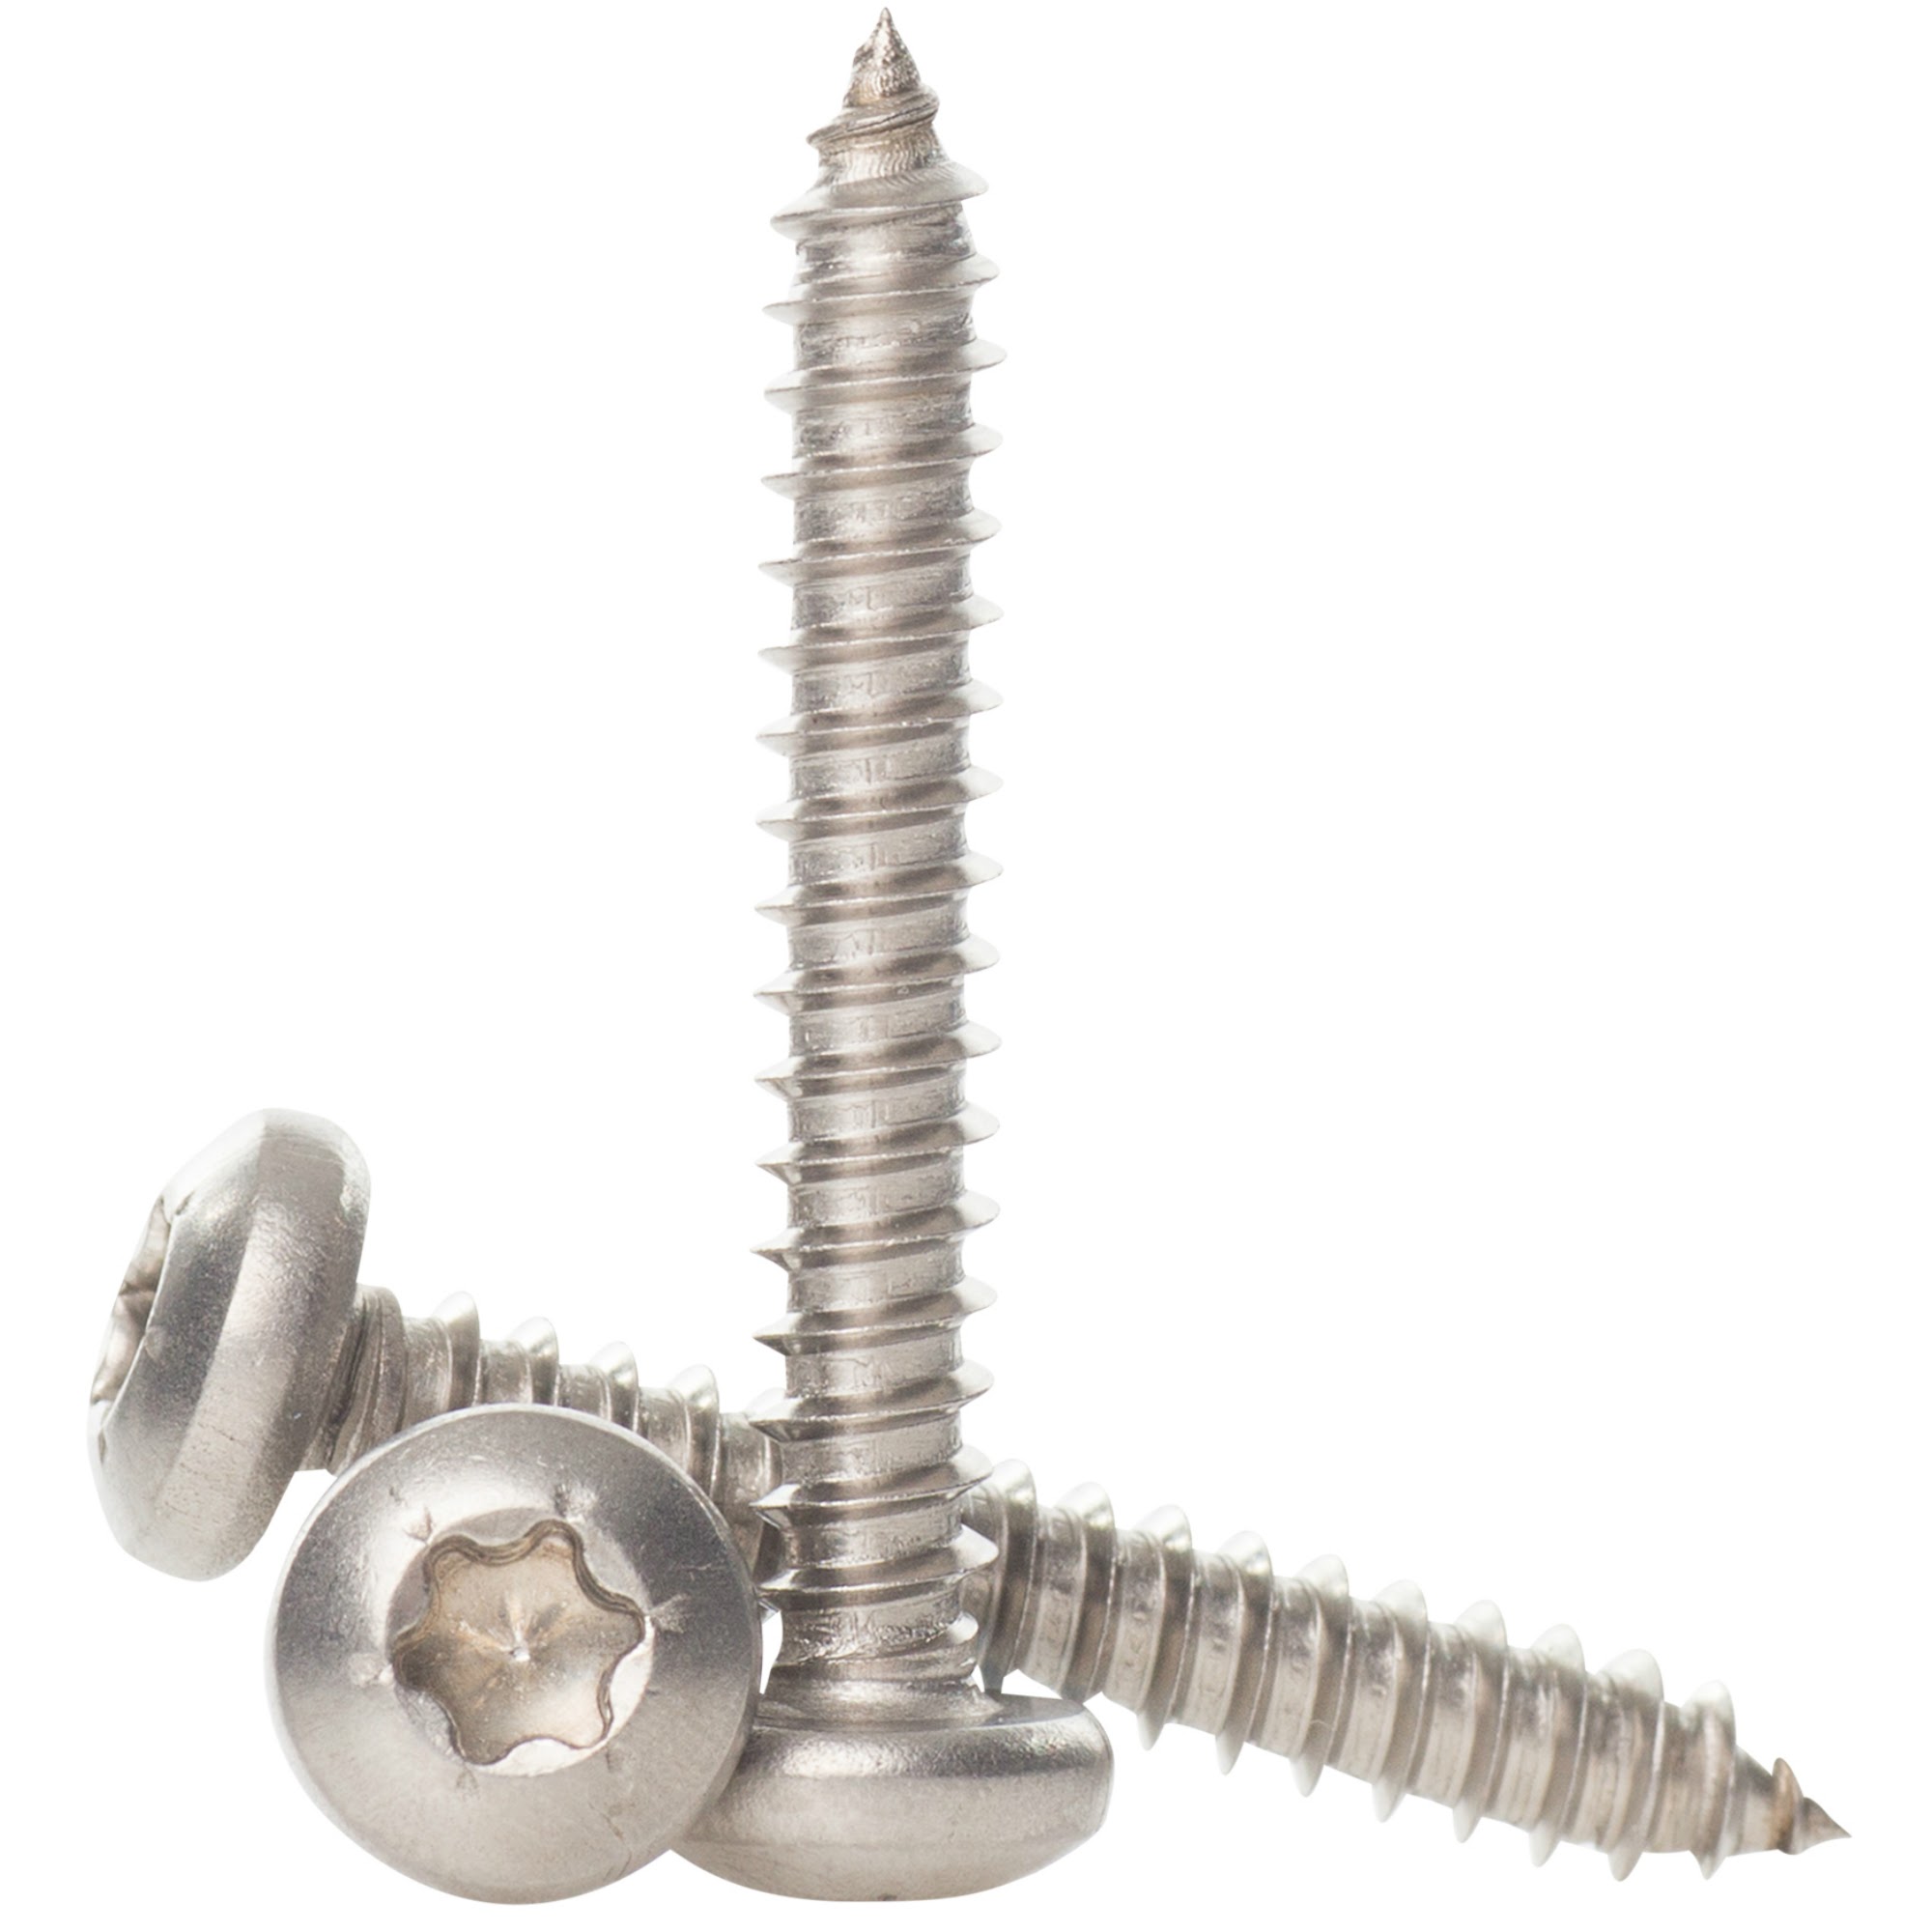 3 stainless steel screws